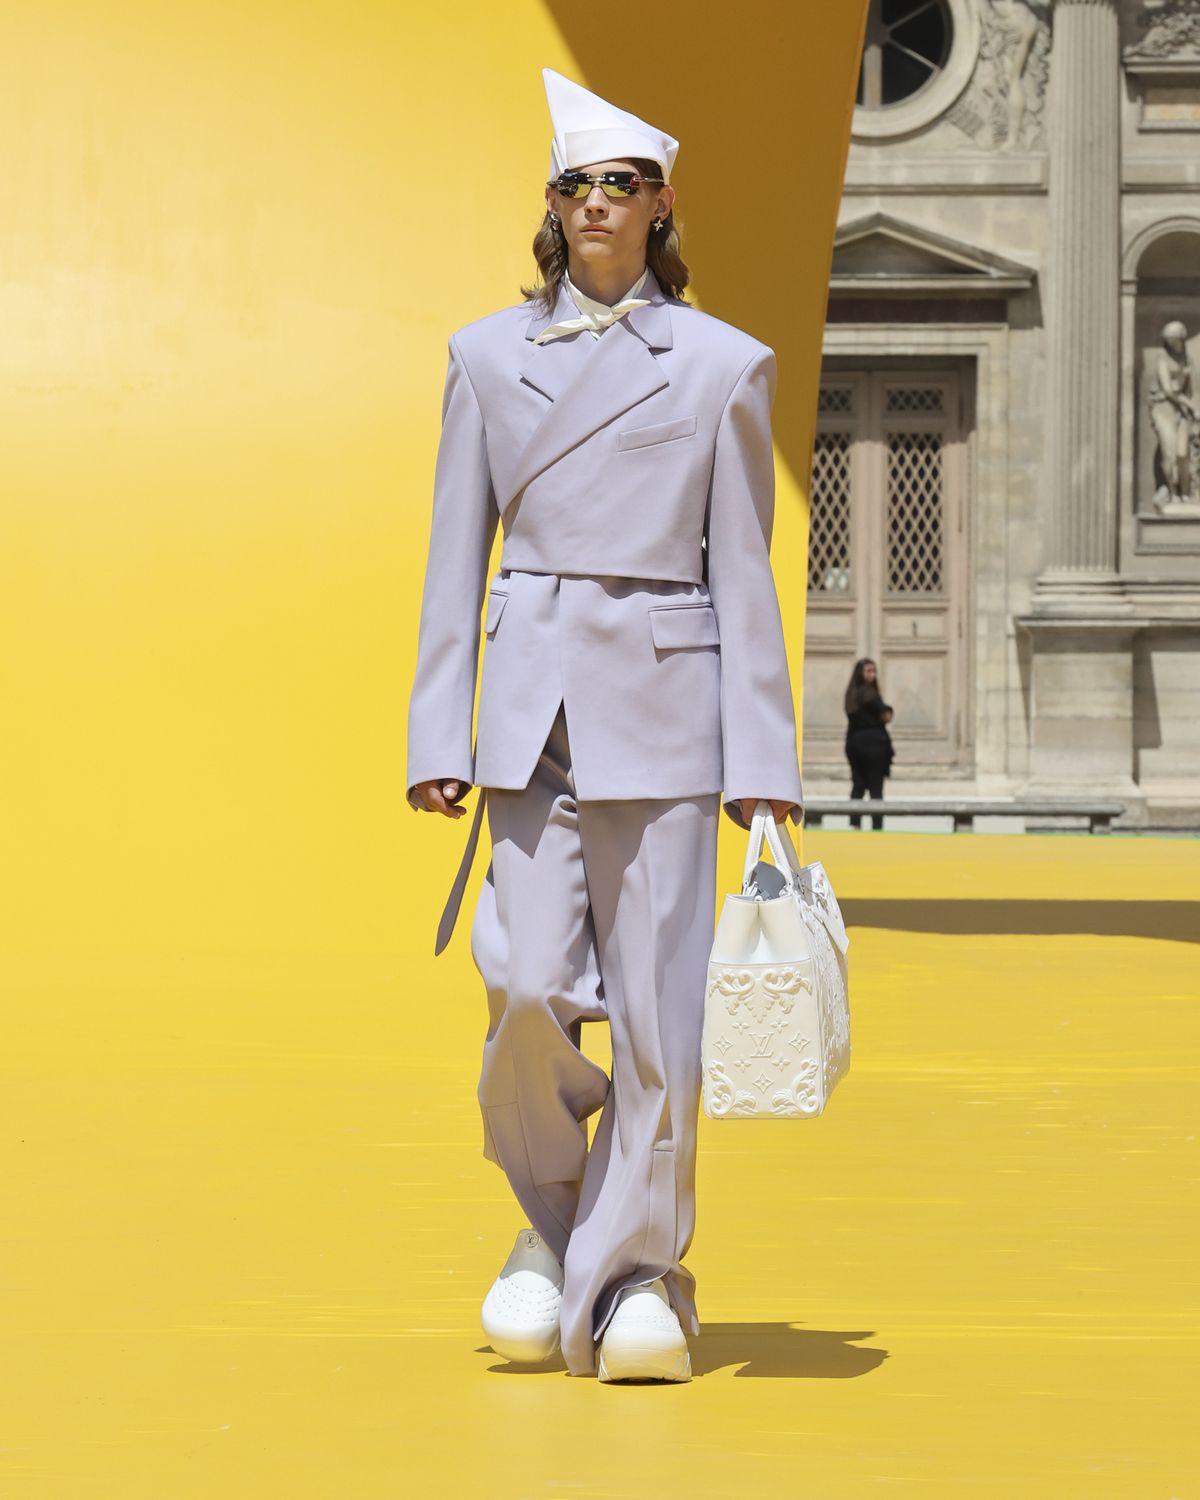 Louis Vuitton Paris Menswear Frühjahr Sommer Modell tragen graue  kragenlosen Hemd winzige Perlmutt Knöpfe und Schleife Befestigungstechnik,  weiß Stockfotografie - Alamy